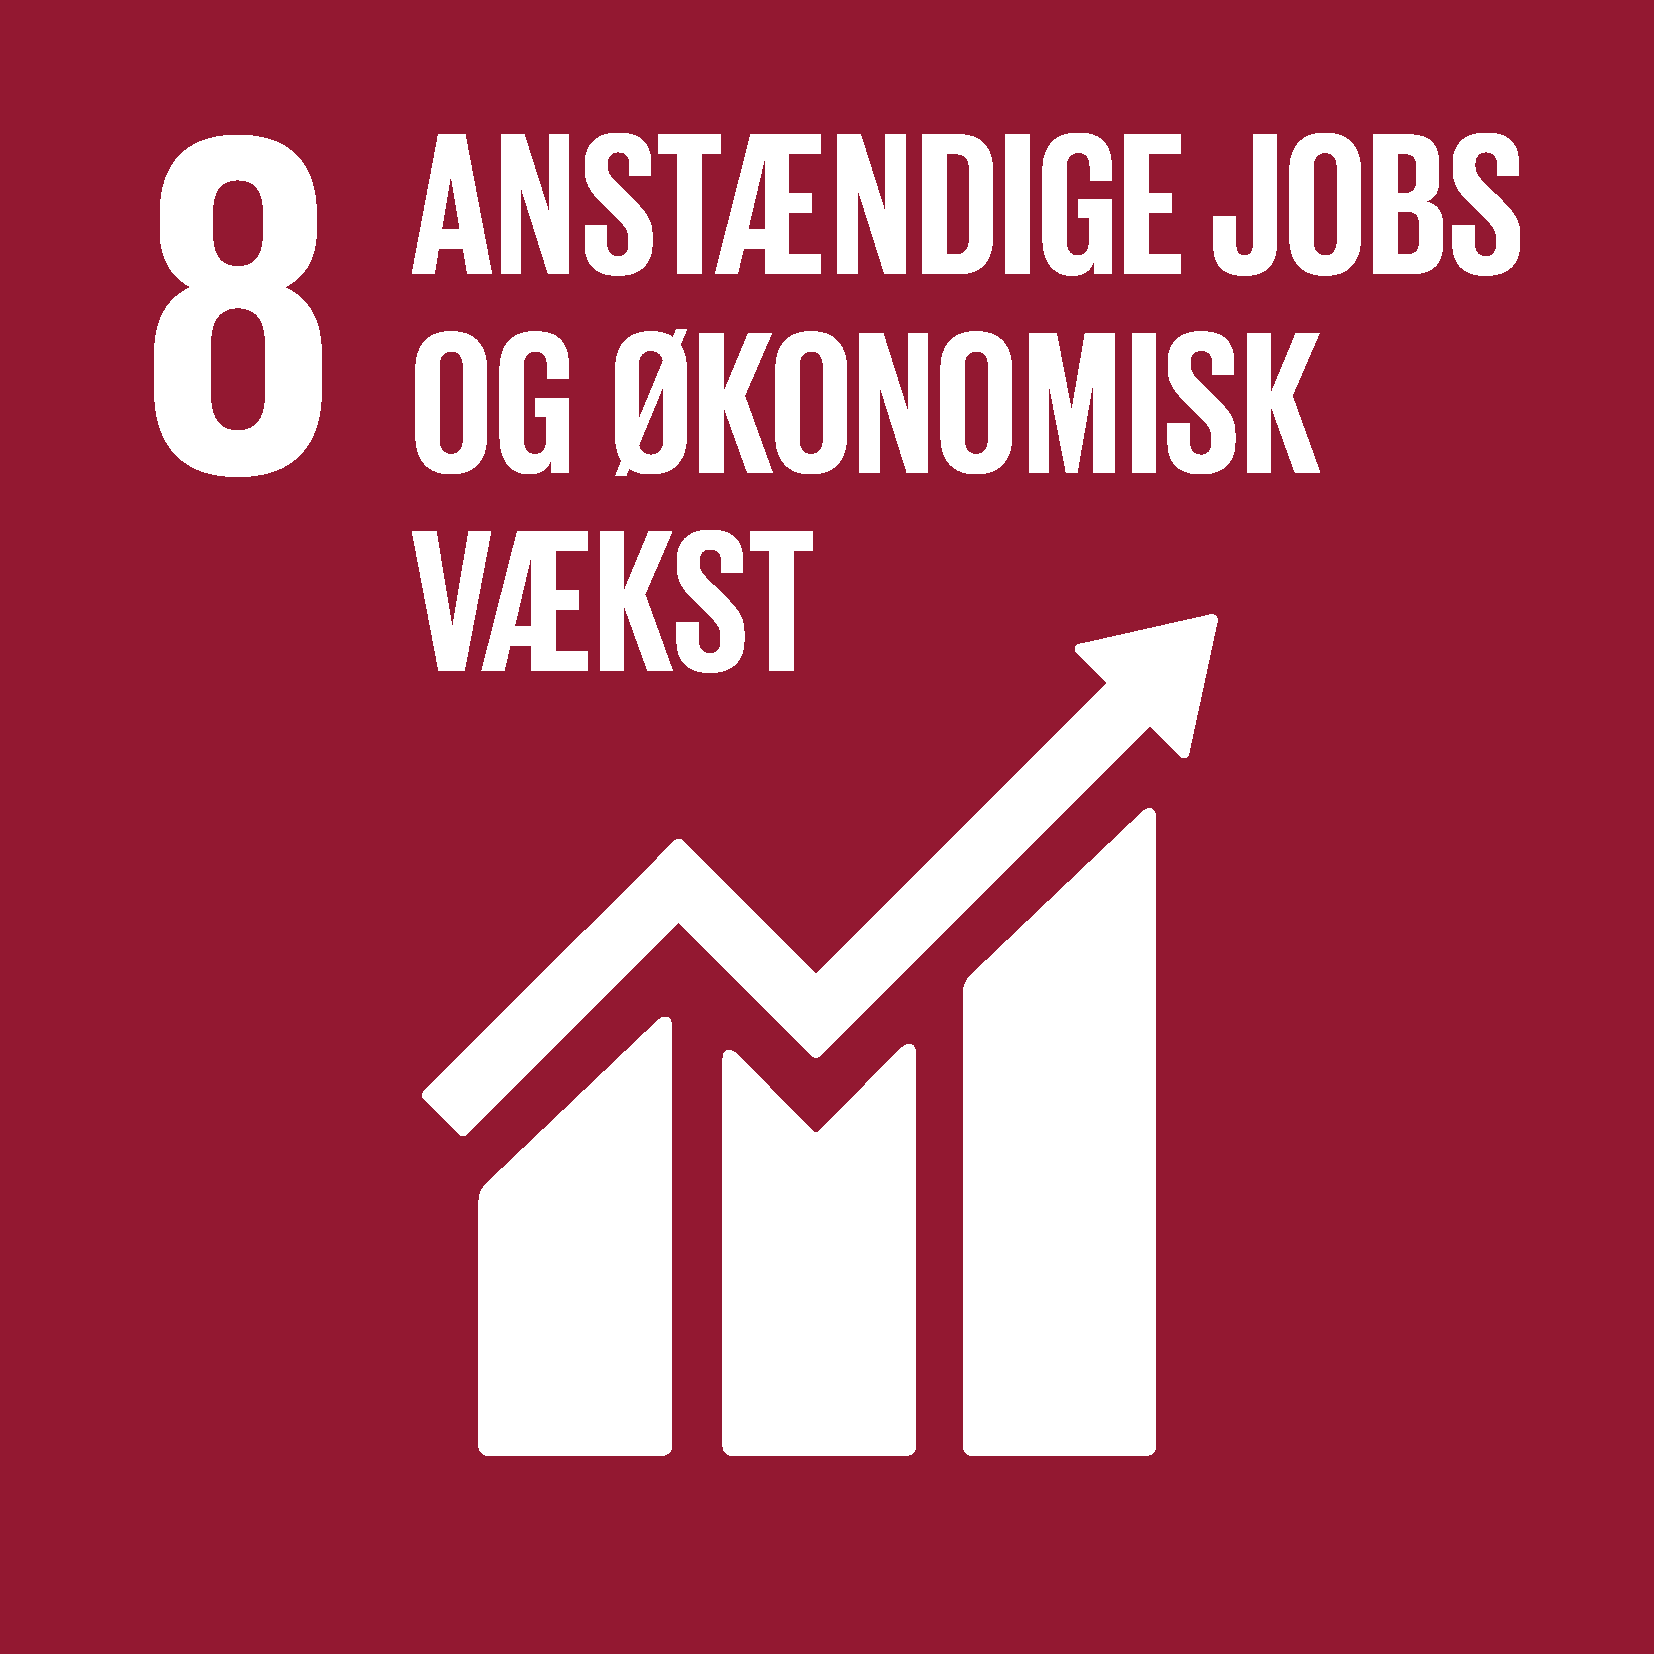 Svaneke Bryghus | Anstændige Jobs og Økonomisk Vækst | FN Verdensmål 8